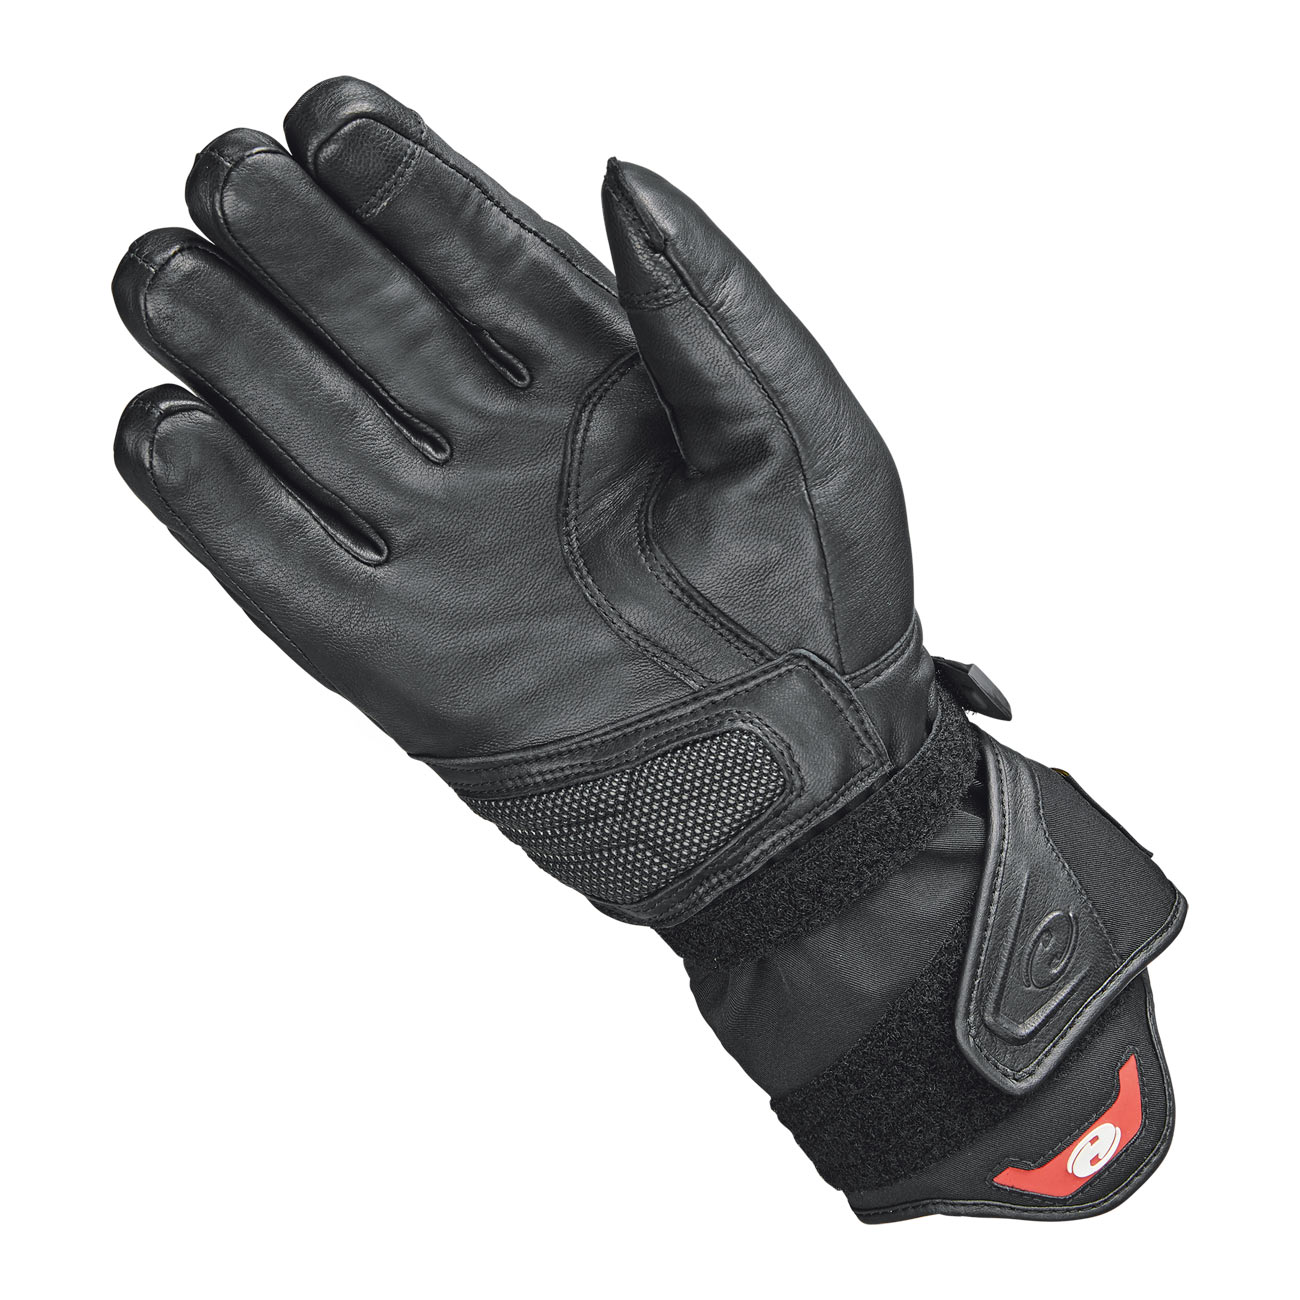 Twin II GORE-TEX® Handschuh + Gore 2in1 Technologie